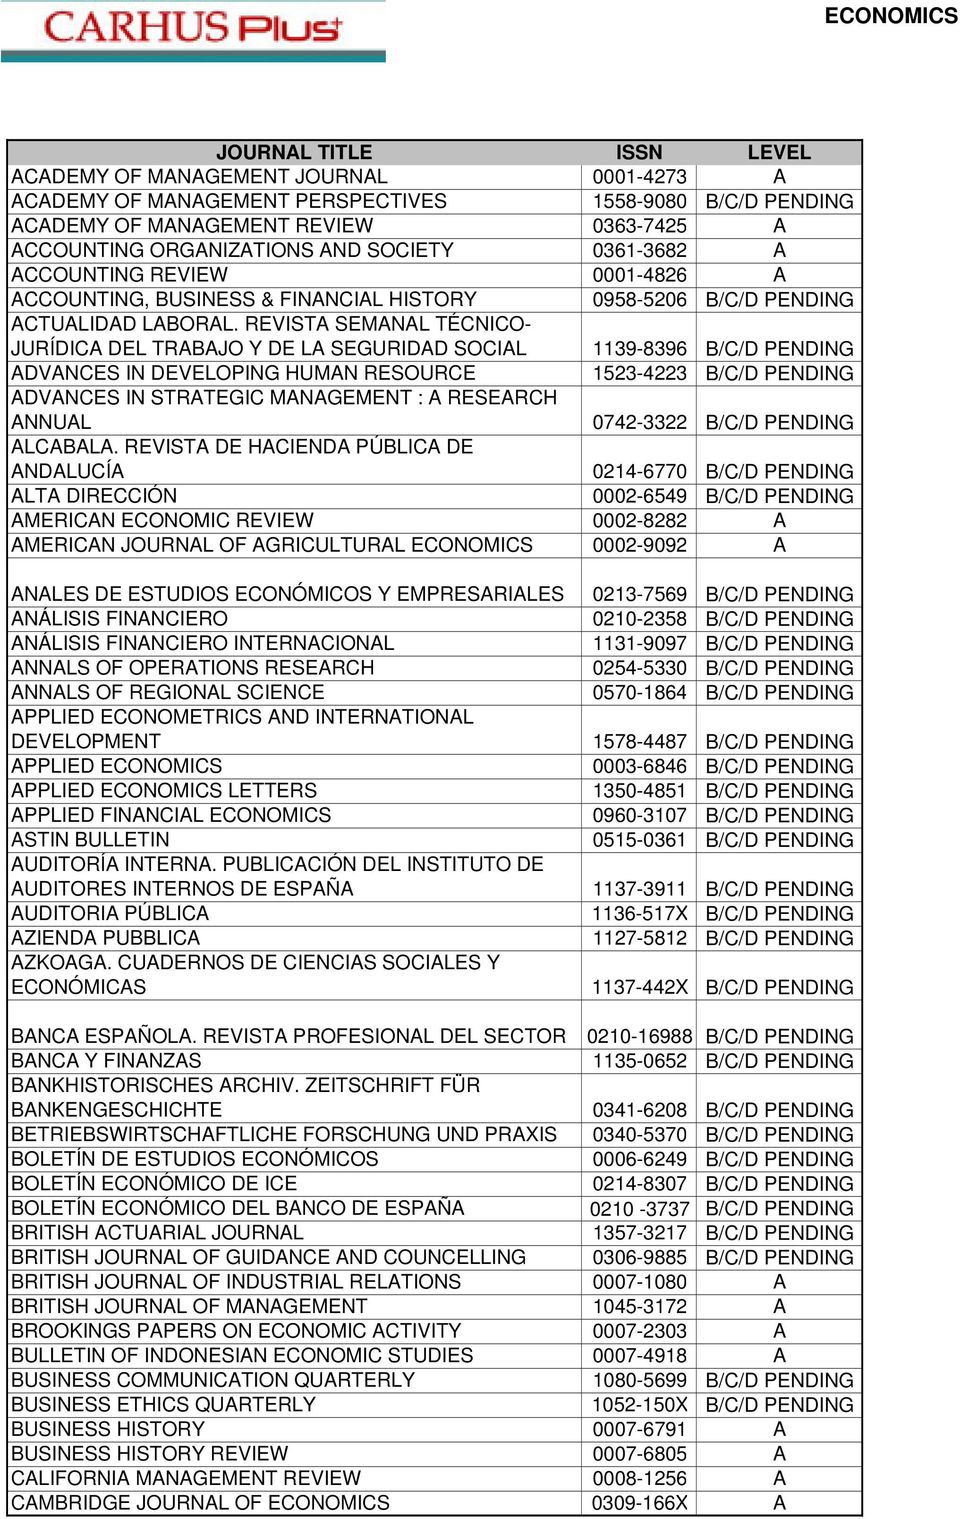 REVISTA SEMANAL TÉCNICO- JURÍDICA DEL TRABAJO Y DE LA SEGURIDAD SOCIAL 1139-8396 B/C/D PENDING ADVANCES IN DEVELOPING HUMAN RESOURCE 1523-4223 B/C/D PENDING ADVANCES IN STRATEGIC MANAGEMENT : A